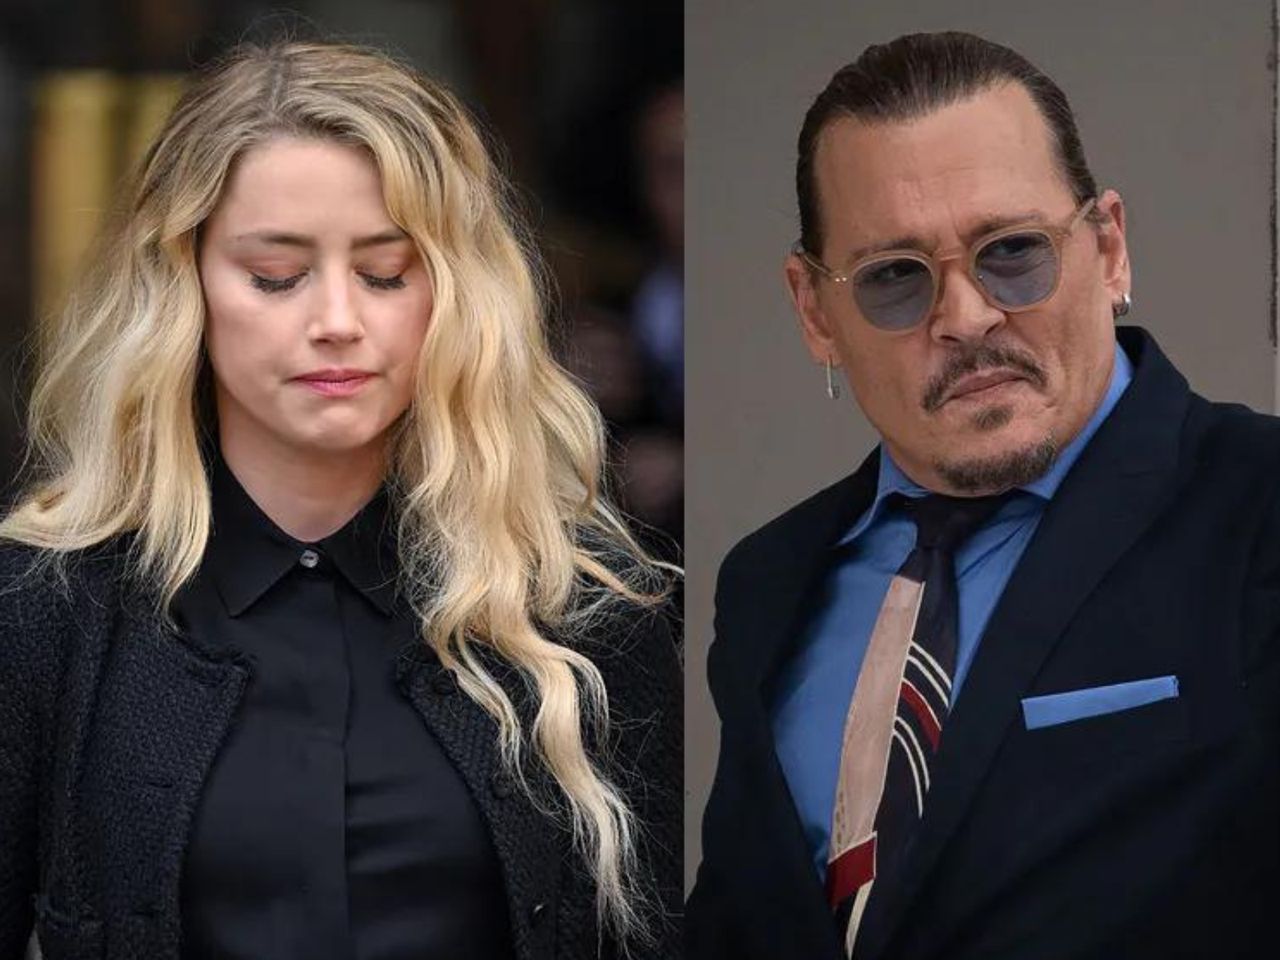 Nowe dokumenty z procesu Johnny'ego Deppa przeciwko Amber Heard zostały ujawnione. Gwiazdy odwracają się od aktora